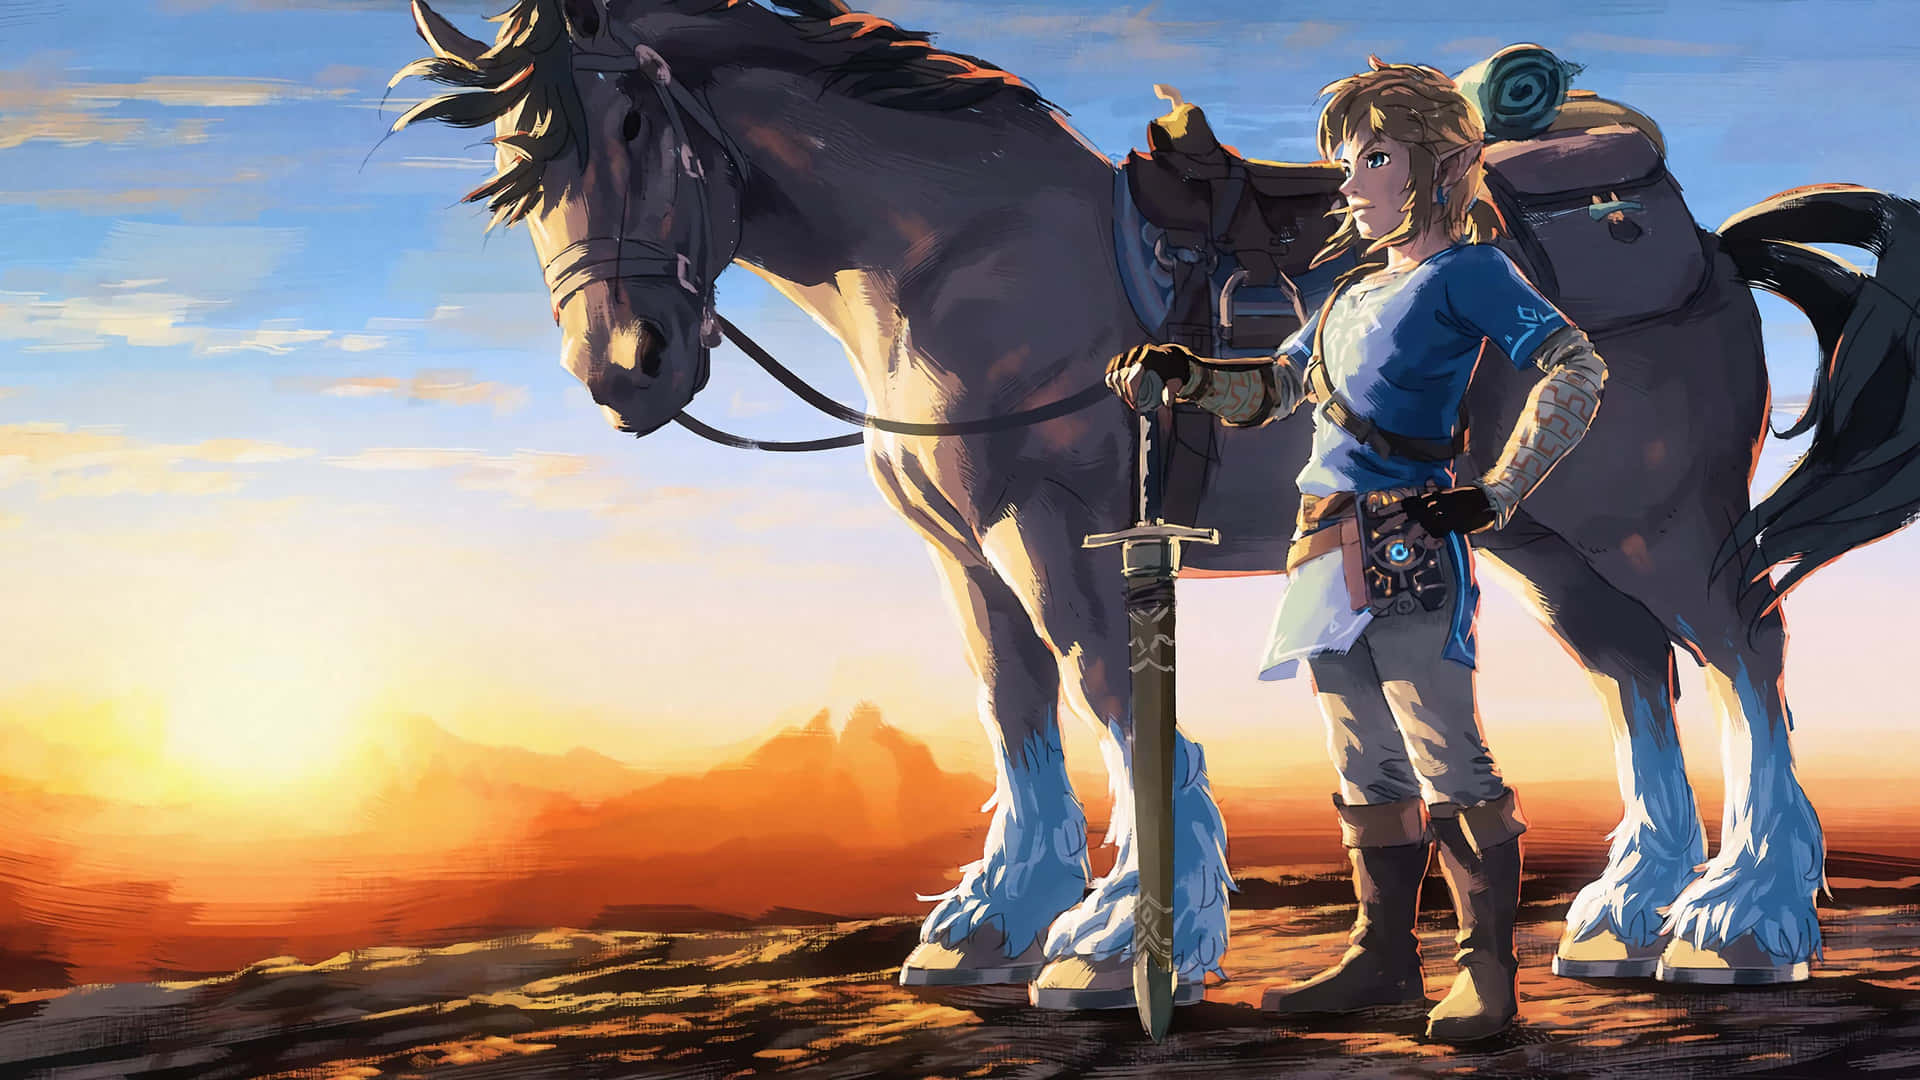 Utforskavärlden Av Hyrule I Fantastisk 4k Med The Legend Of Zelda: Breath Of The Wild. Wallpaper